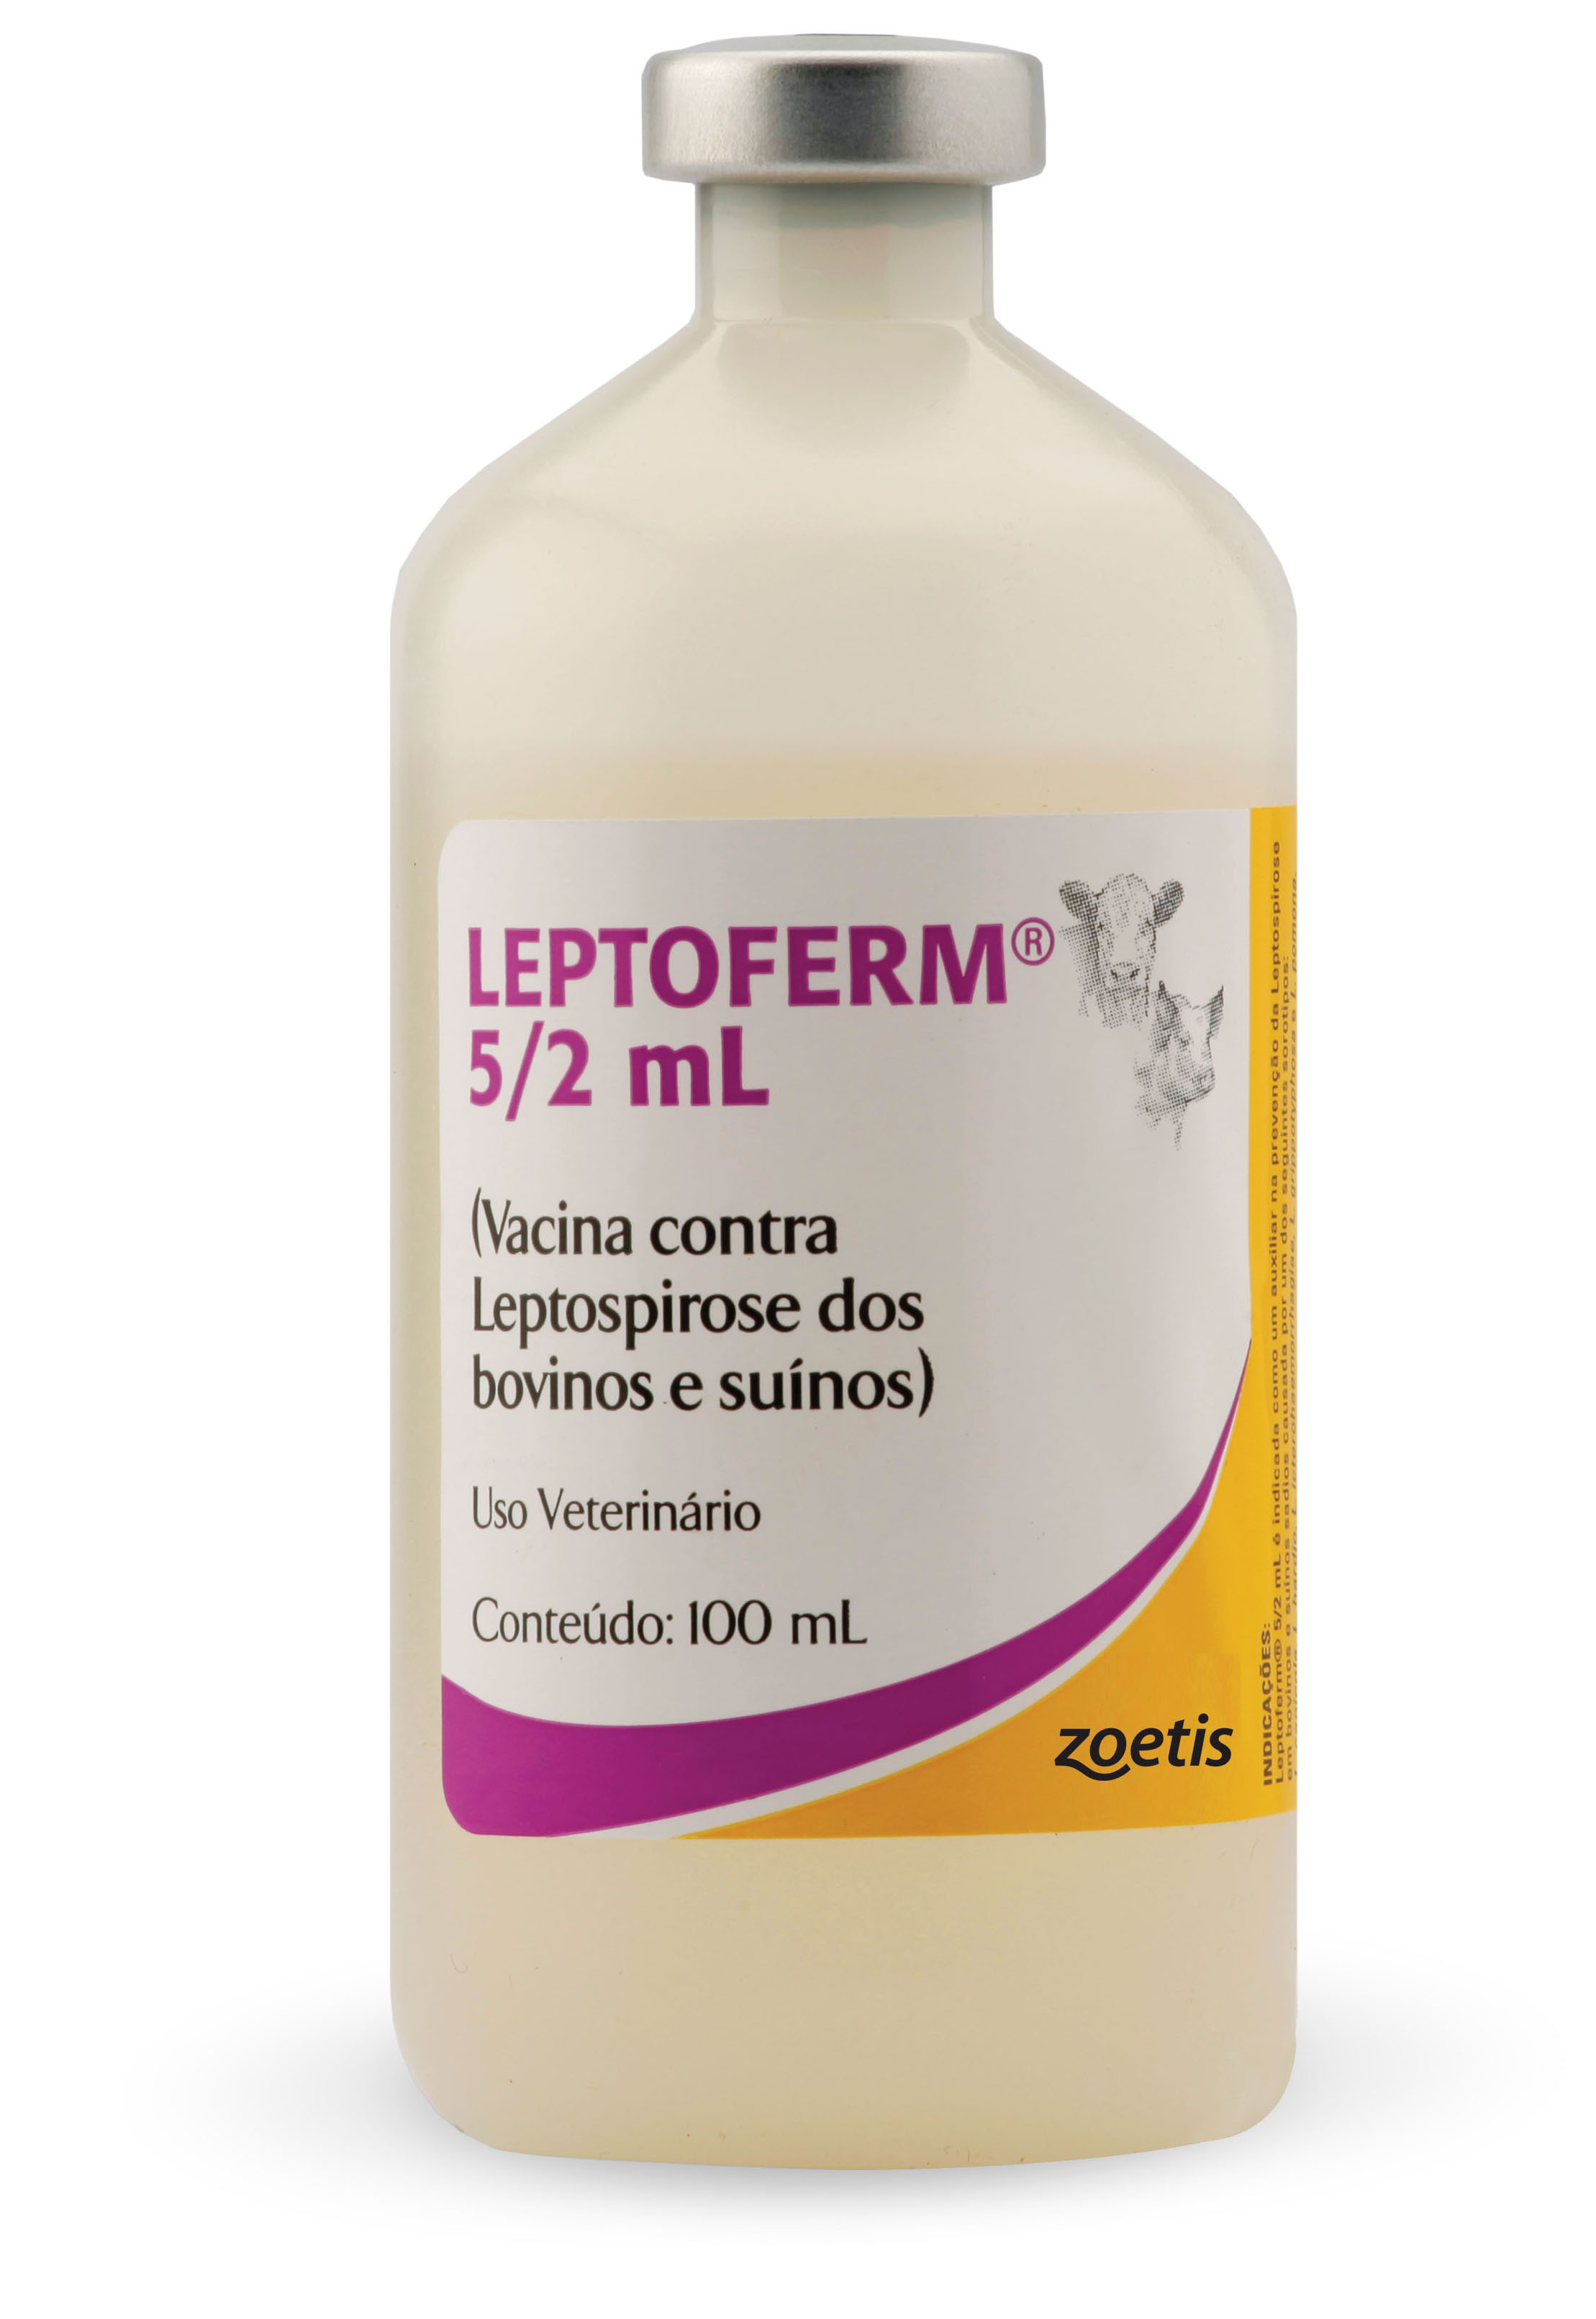 Leptoferm® 52 mL